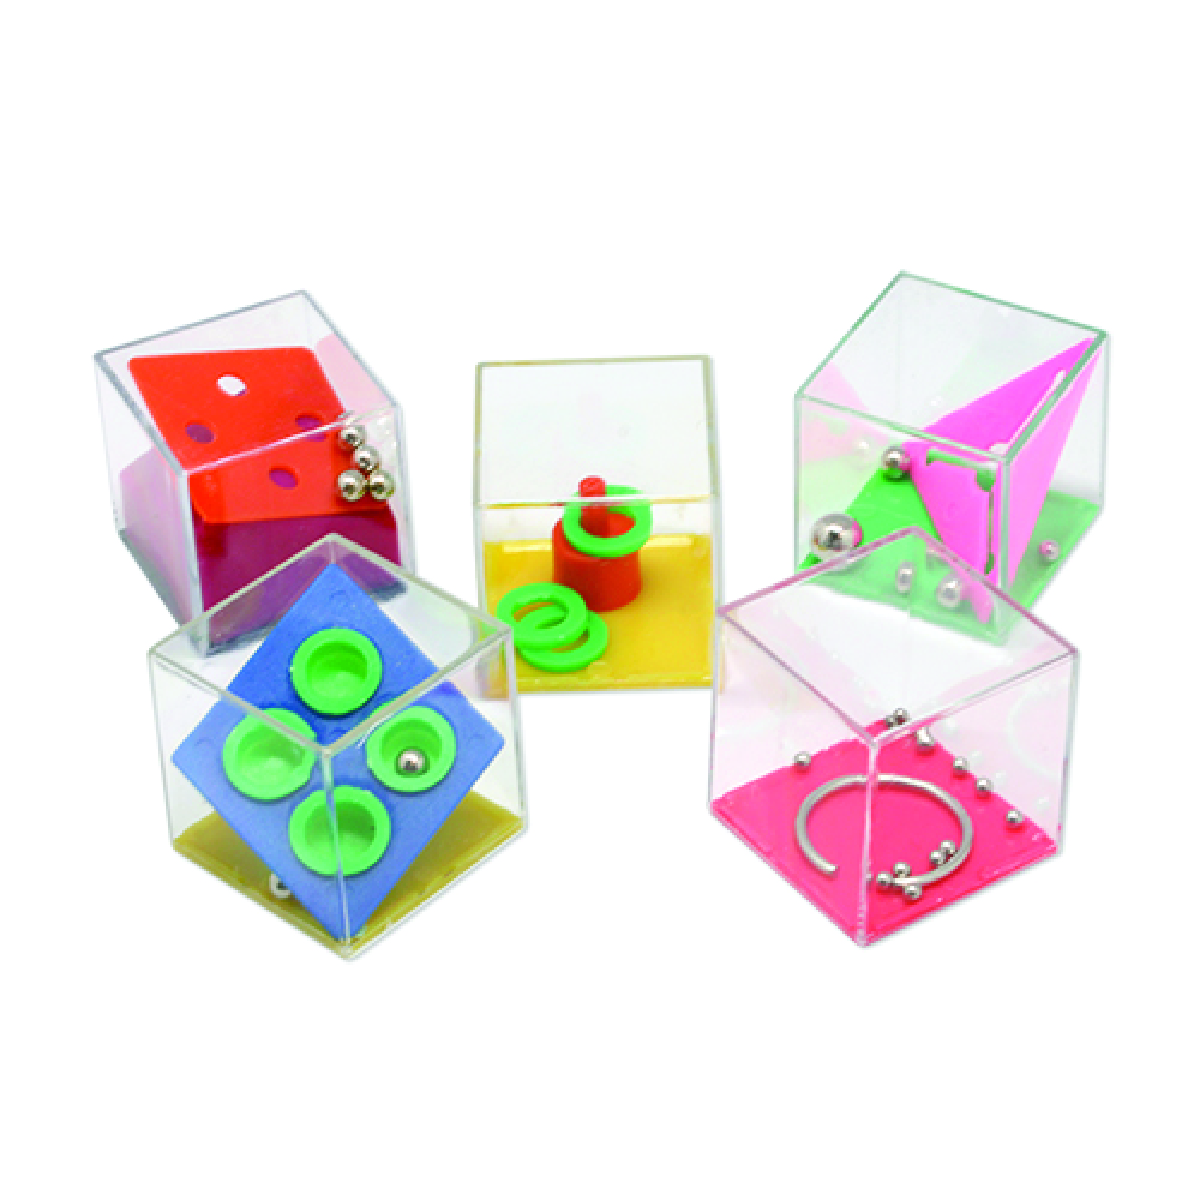 Multi Cube Puzzles Assortment